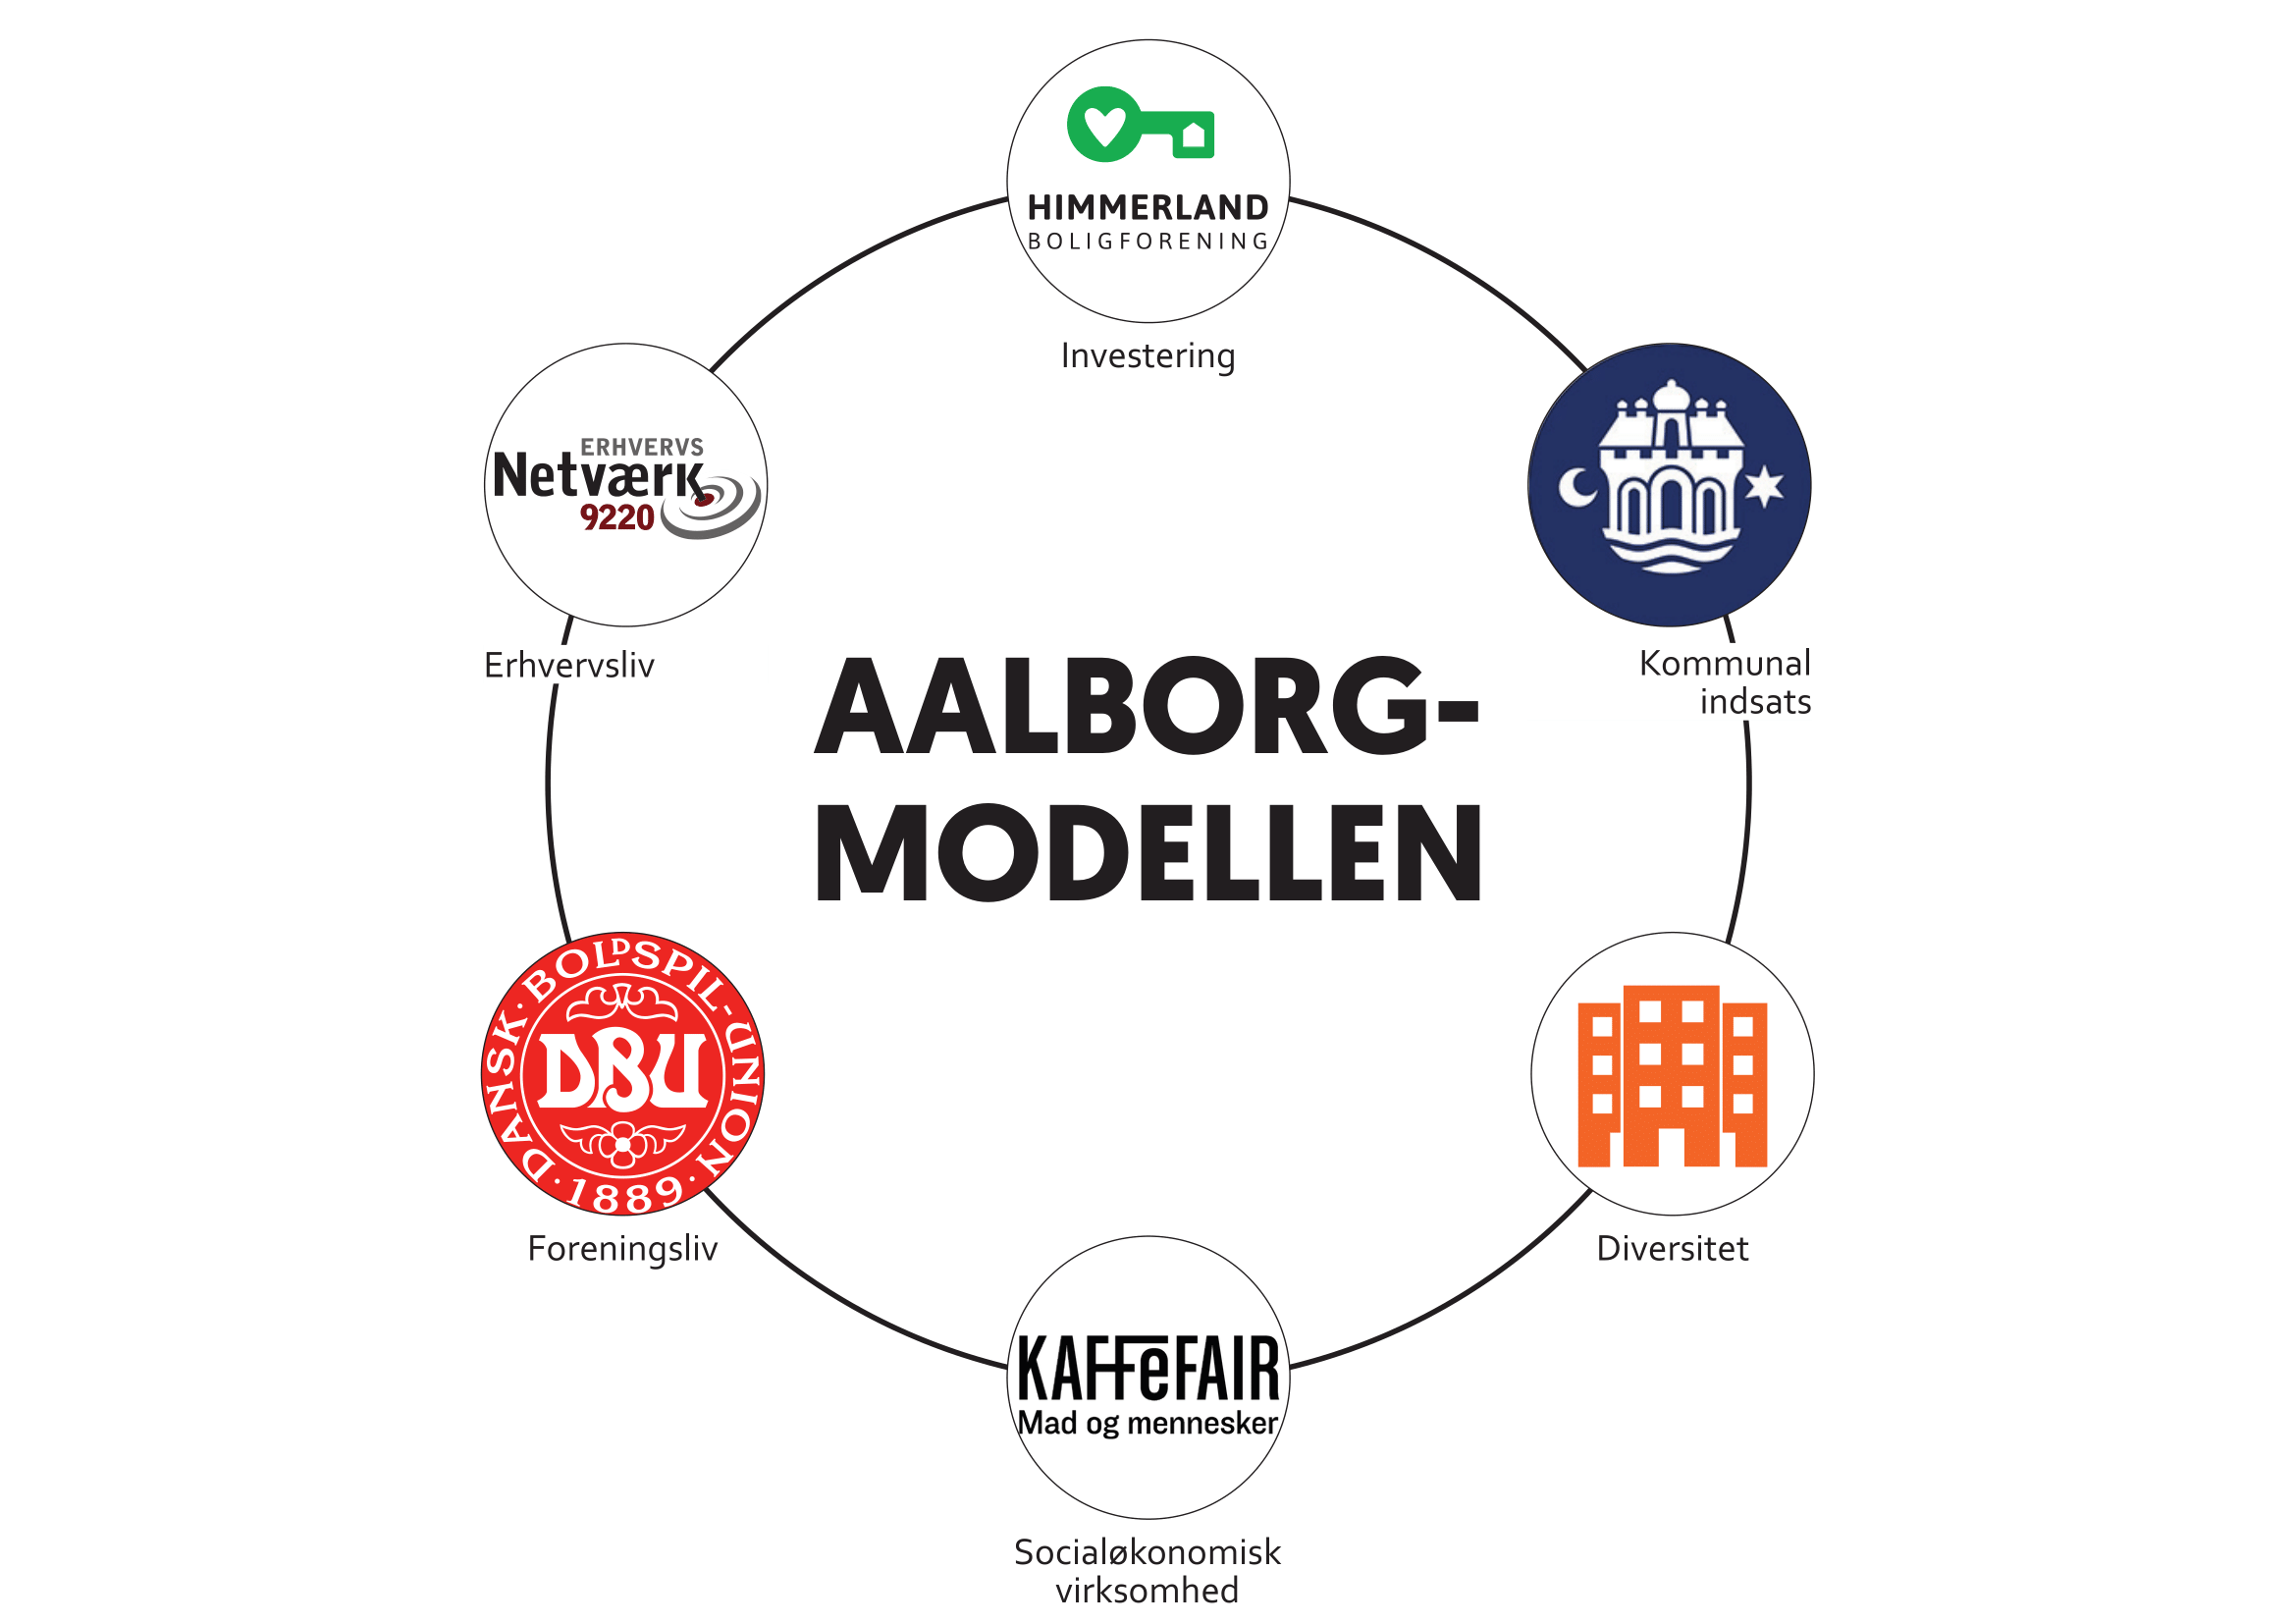 Her kan du se de konkrete aktører i Aalborg modellen